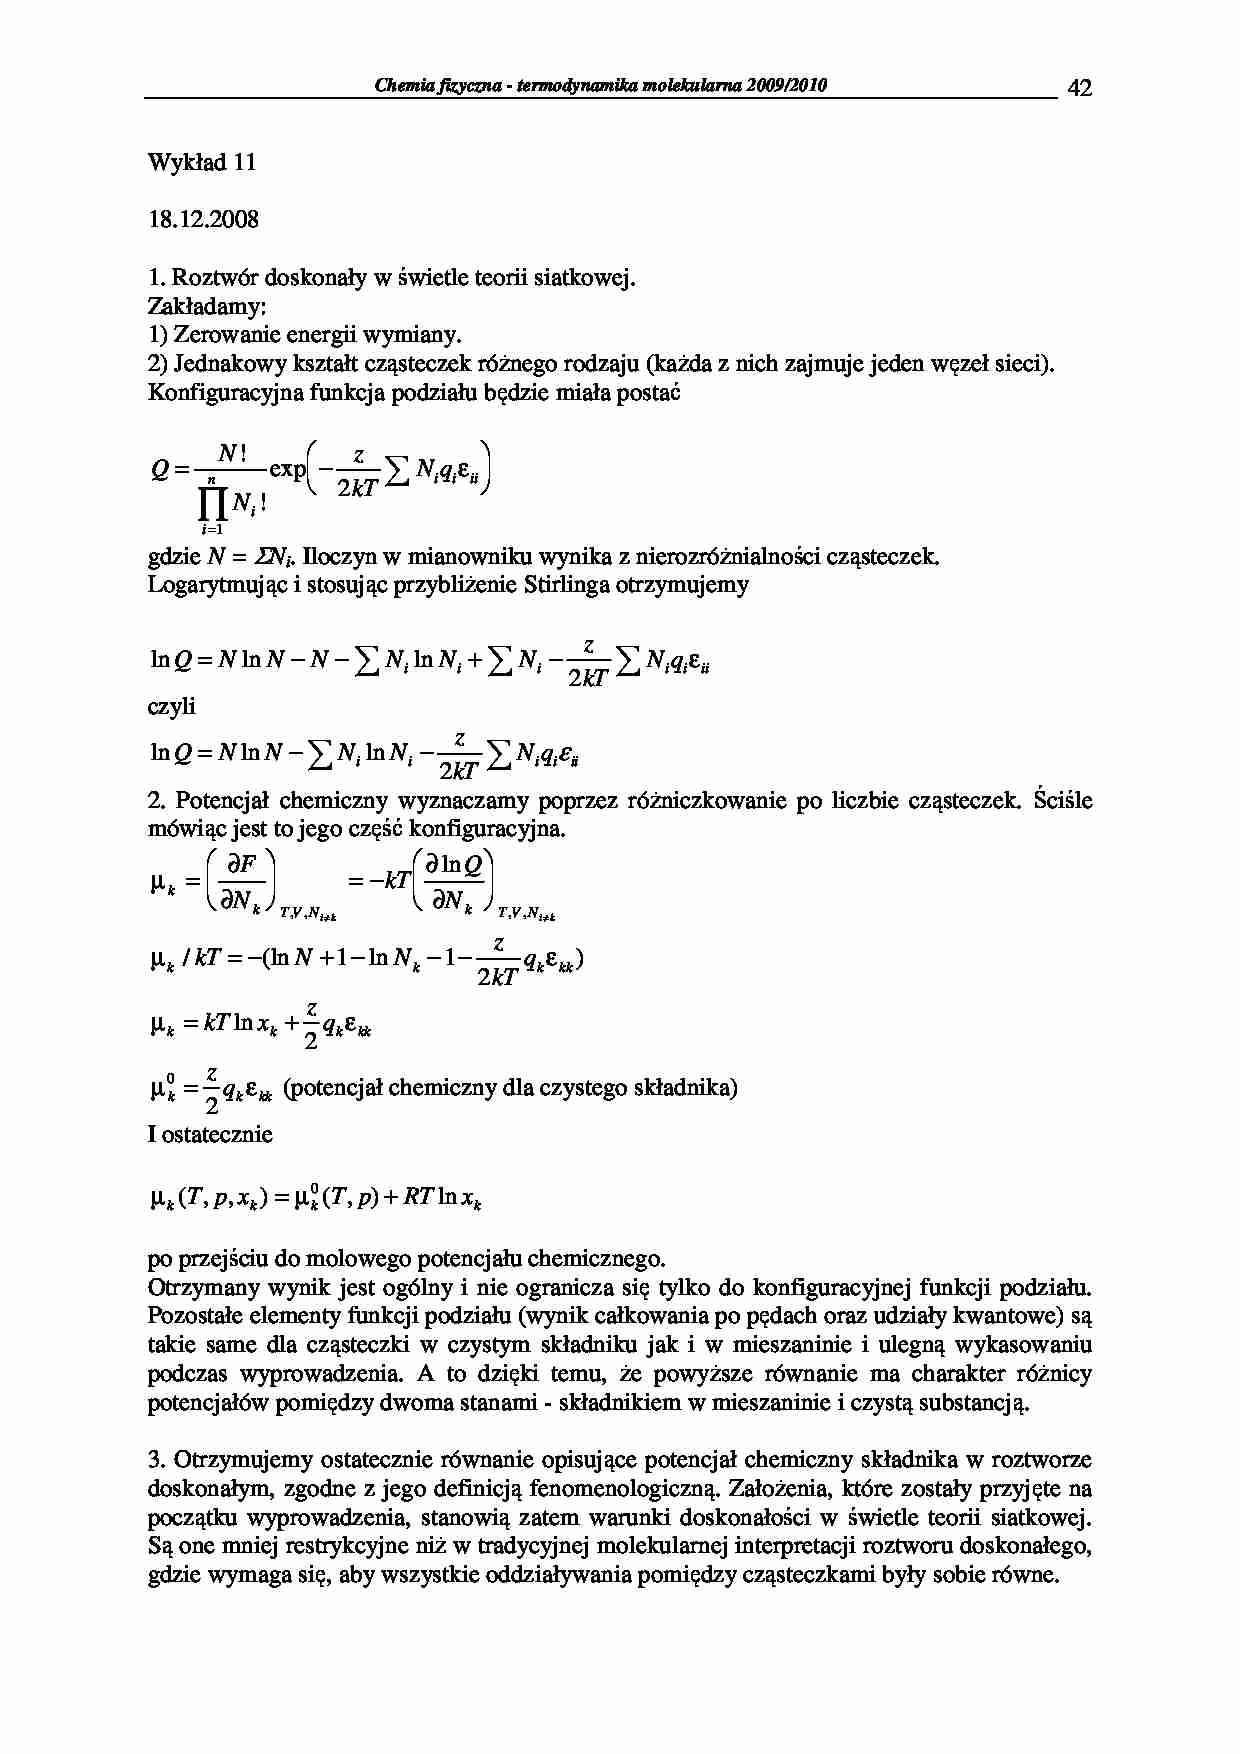 Chemia fizyczna - termodynamika molekularna 2009/2010-wykłady3 - strona 1